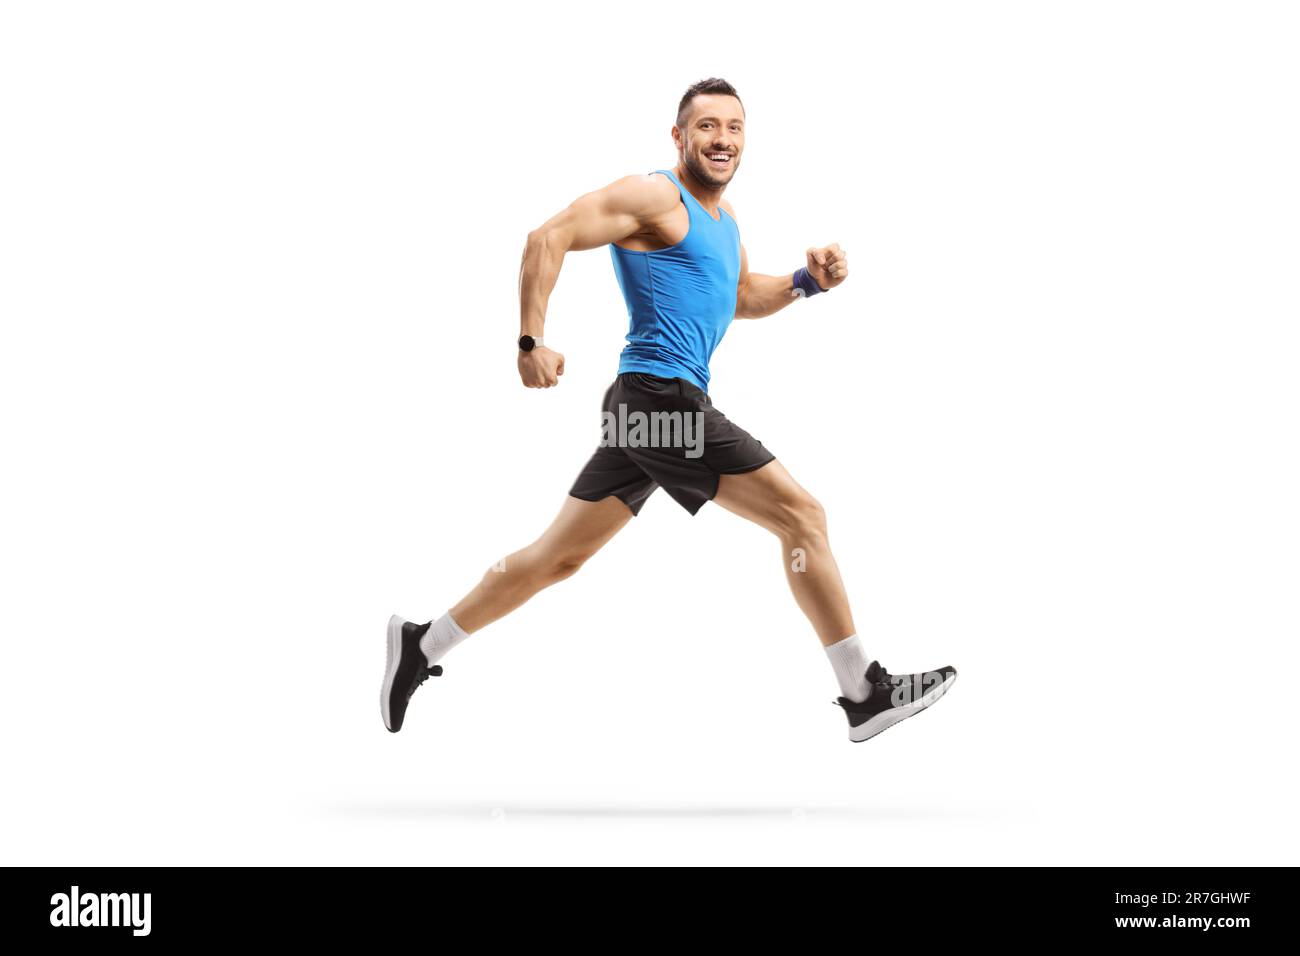 Profilo a tutta lunghezza di un uomo in corsa sportiva e sorridente isolato su sfondo bianco Foto Stock